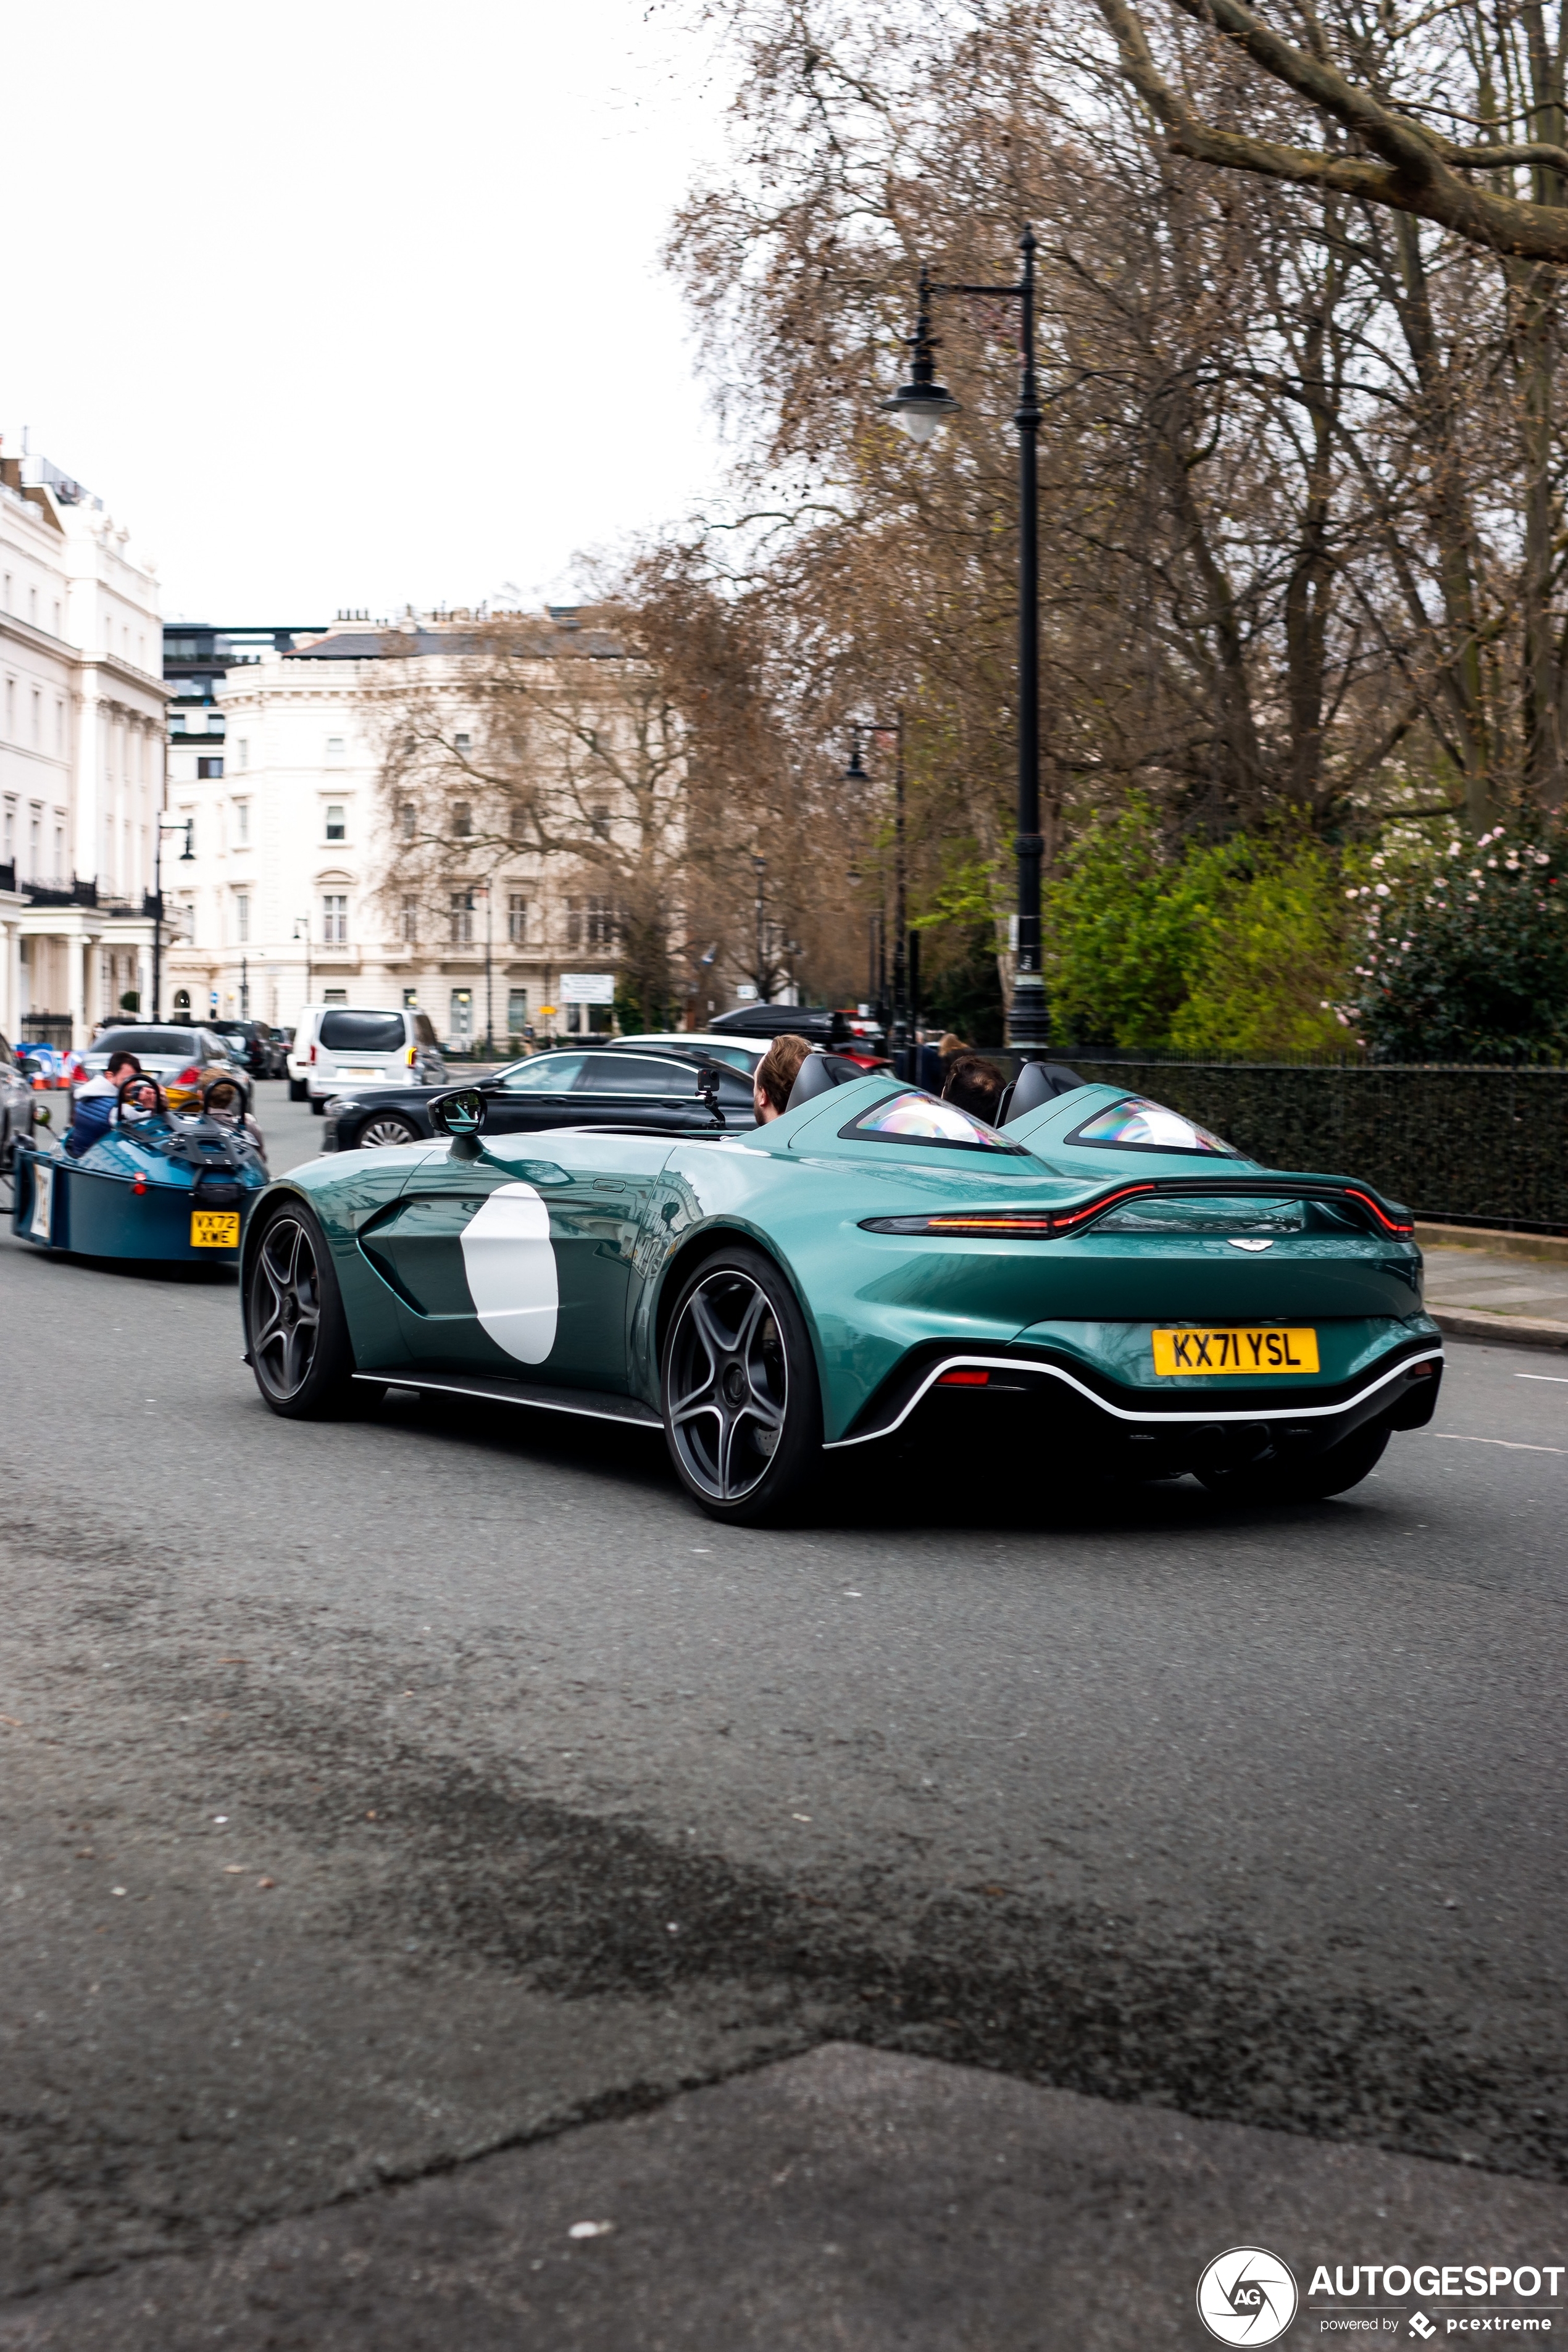 Londen levert weer een nieuwe Aston Martin V12 Speedster